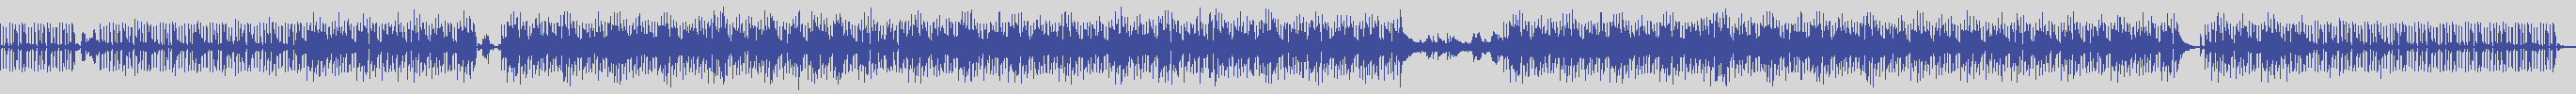 noclouds_chillout [NOC013] Backsoul System - Incontri Notturni [Original Mix] audio wave form